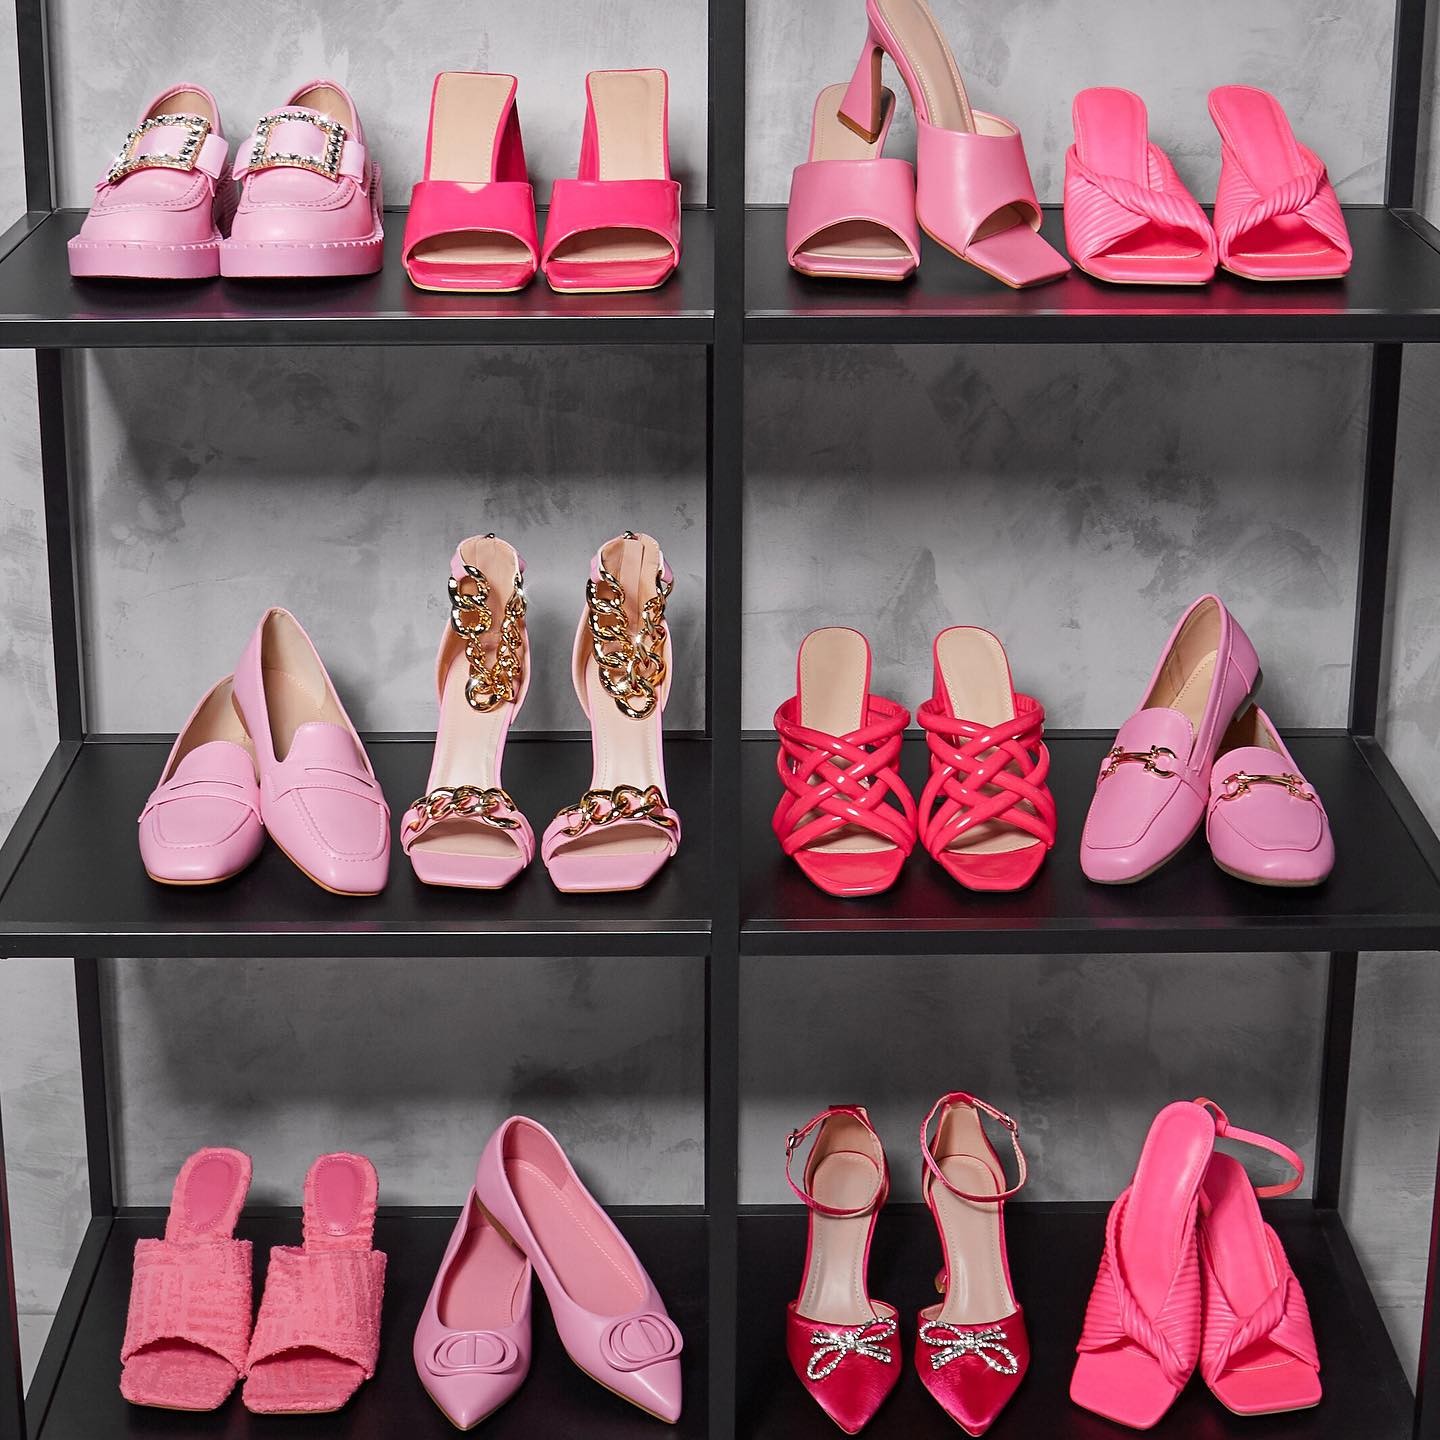 Ponury dzień? Nowa para różowych butów powinna załatwić sprawę! No albo 12 👠 WHY NOT? 🛍

Które najbardziej przypadły Ci do gustu? 👀

#reneeshoes #reneegirls #reneepl #pinkshoes #shoes #shoesaddict #shoestagram #buty #polishgirl #moda #moda2022